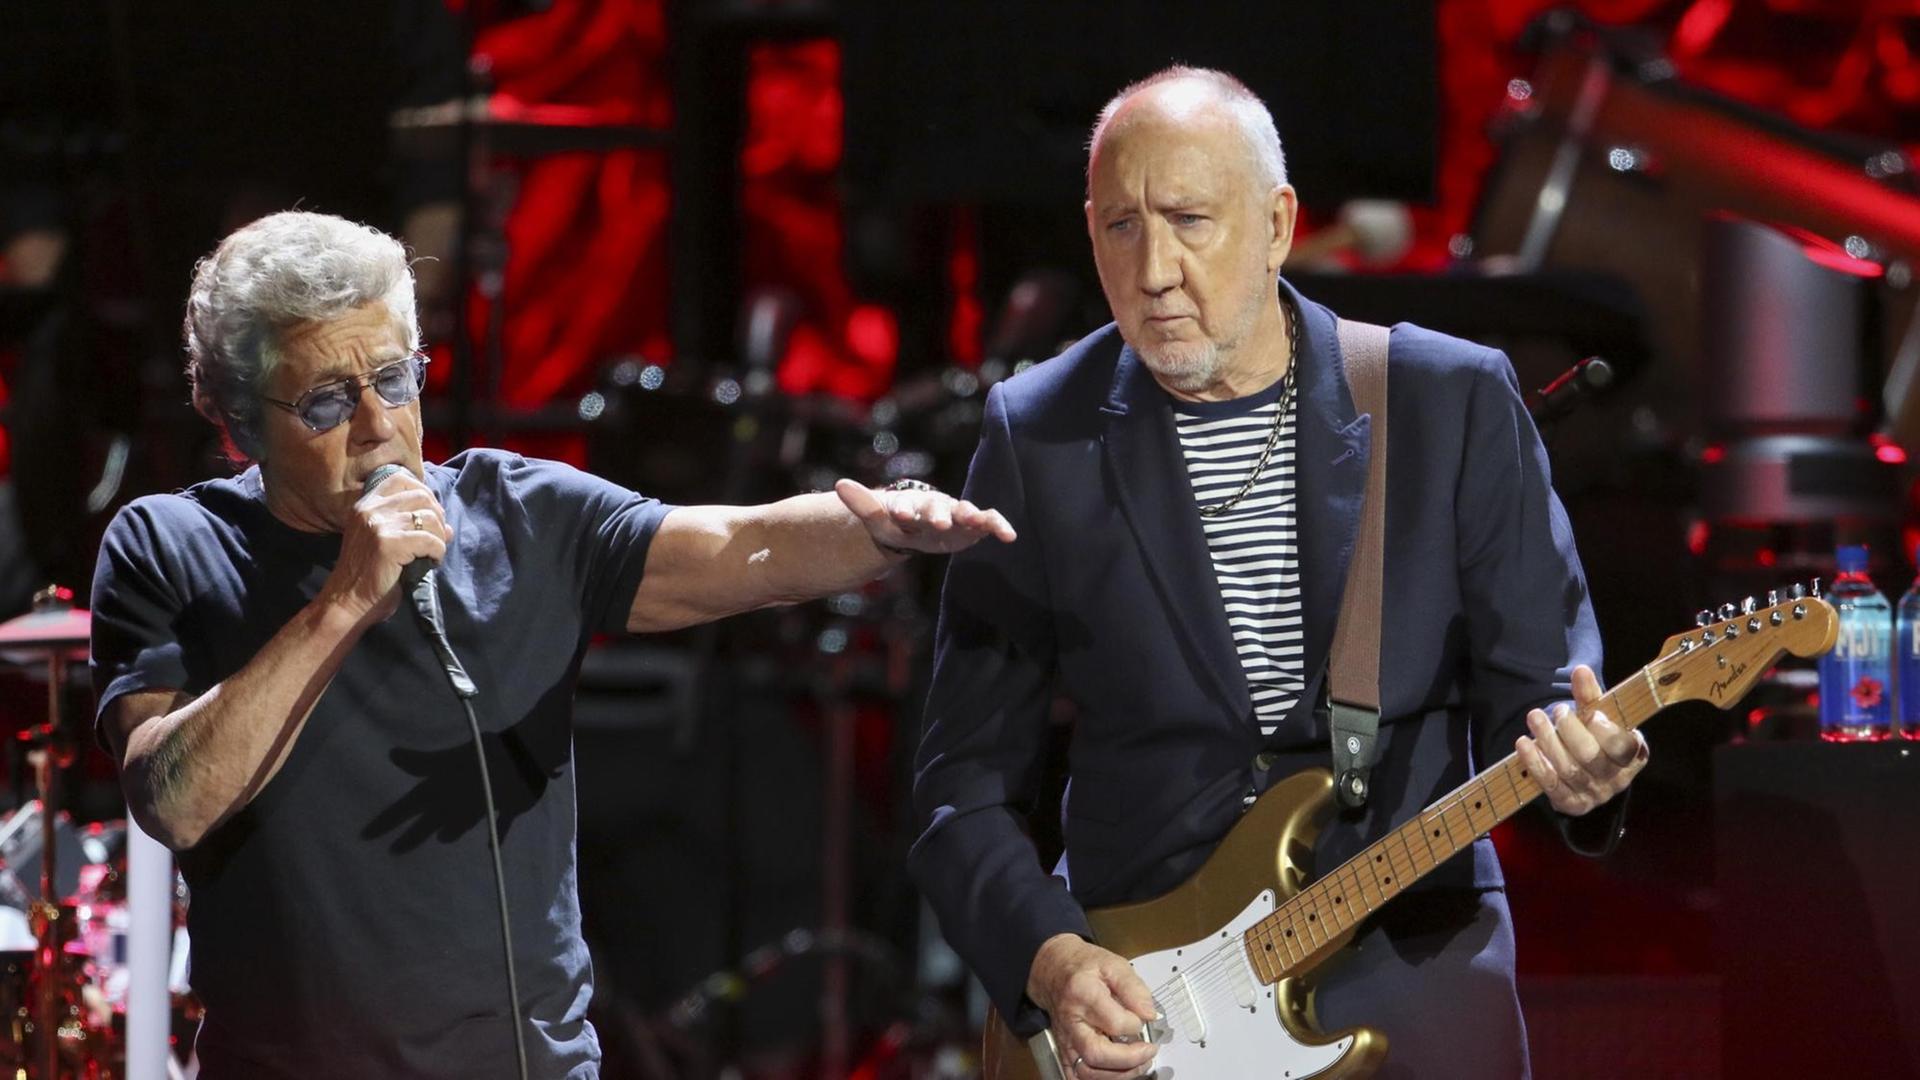 Roger Daltrey und Pete Townshend performen zusammen auf der Bühne in Atlanta.